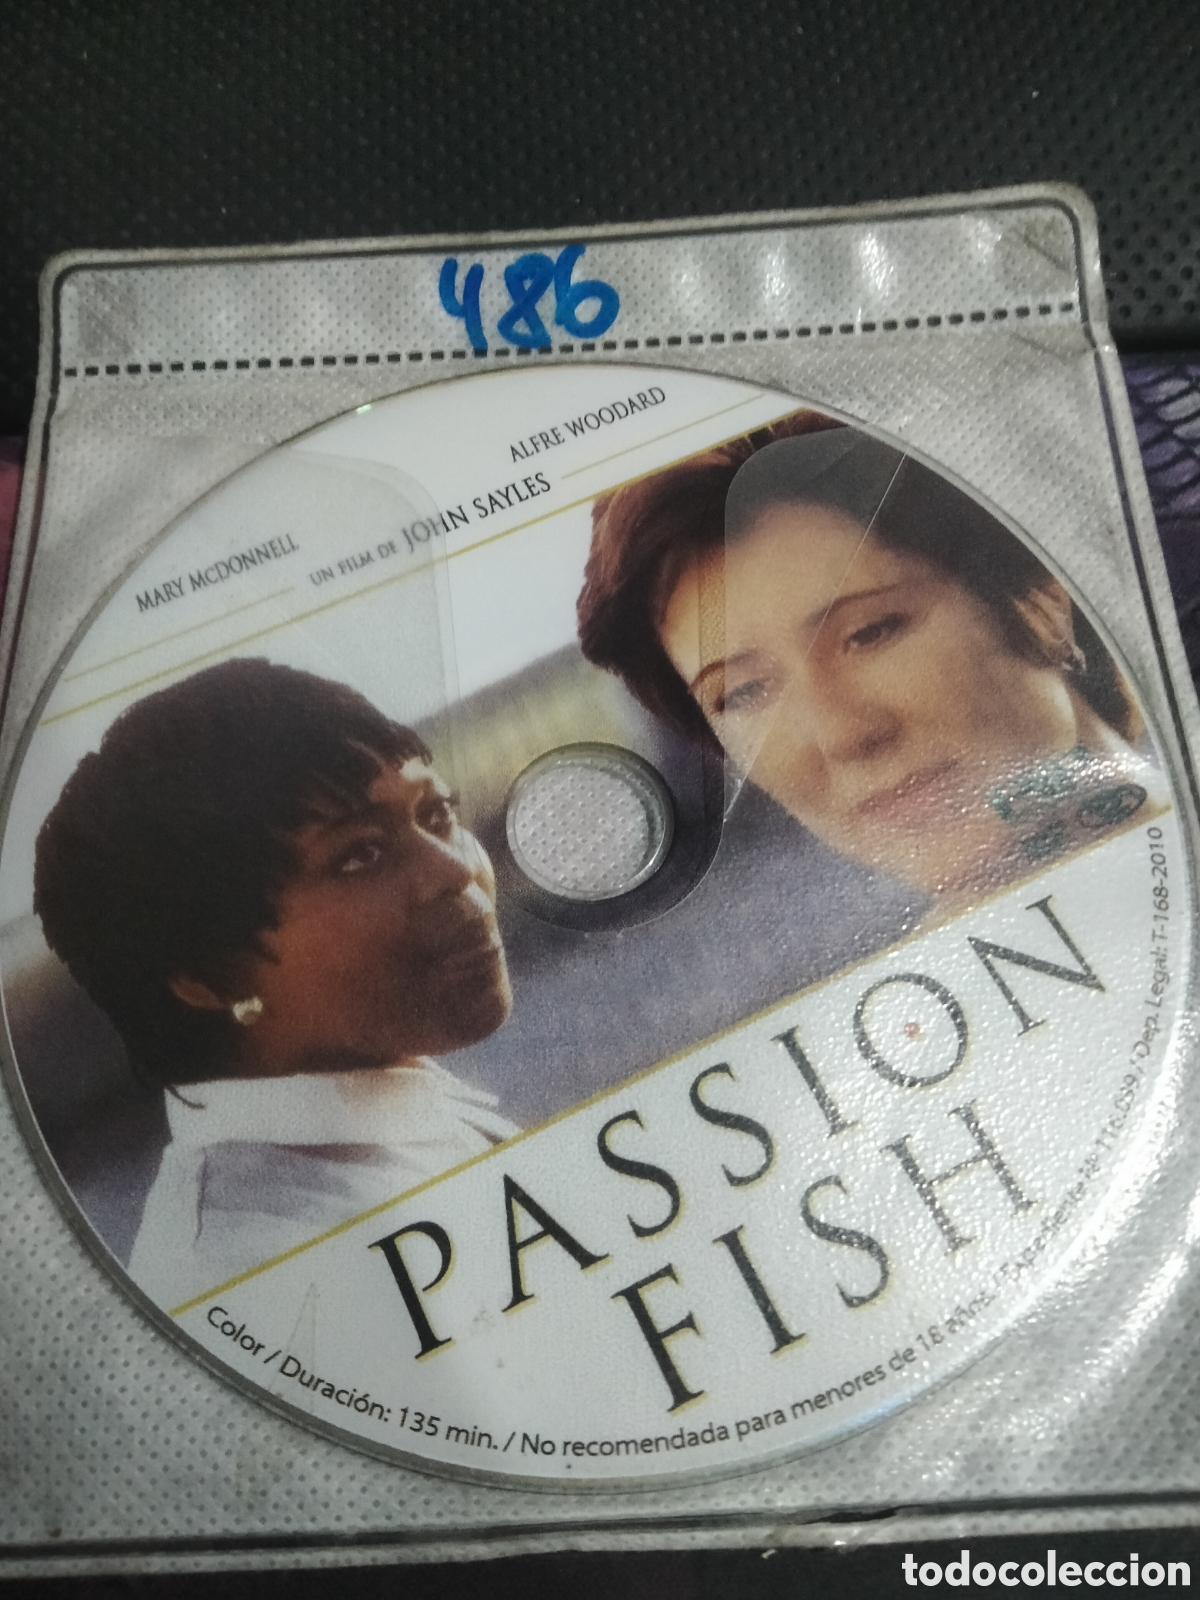 passion fish dvd 486 (disco solo) - Compra venta en todocoleccion